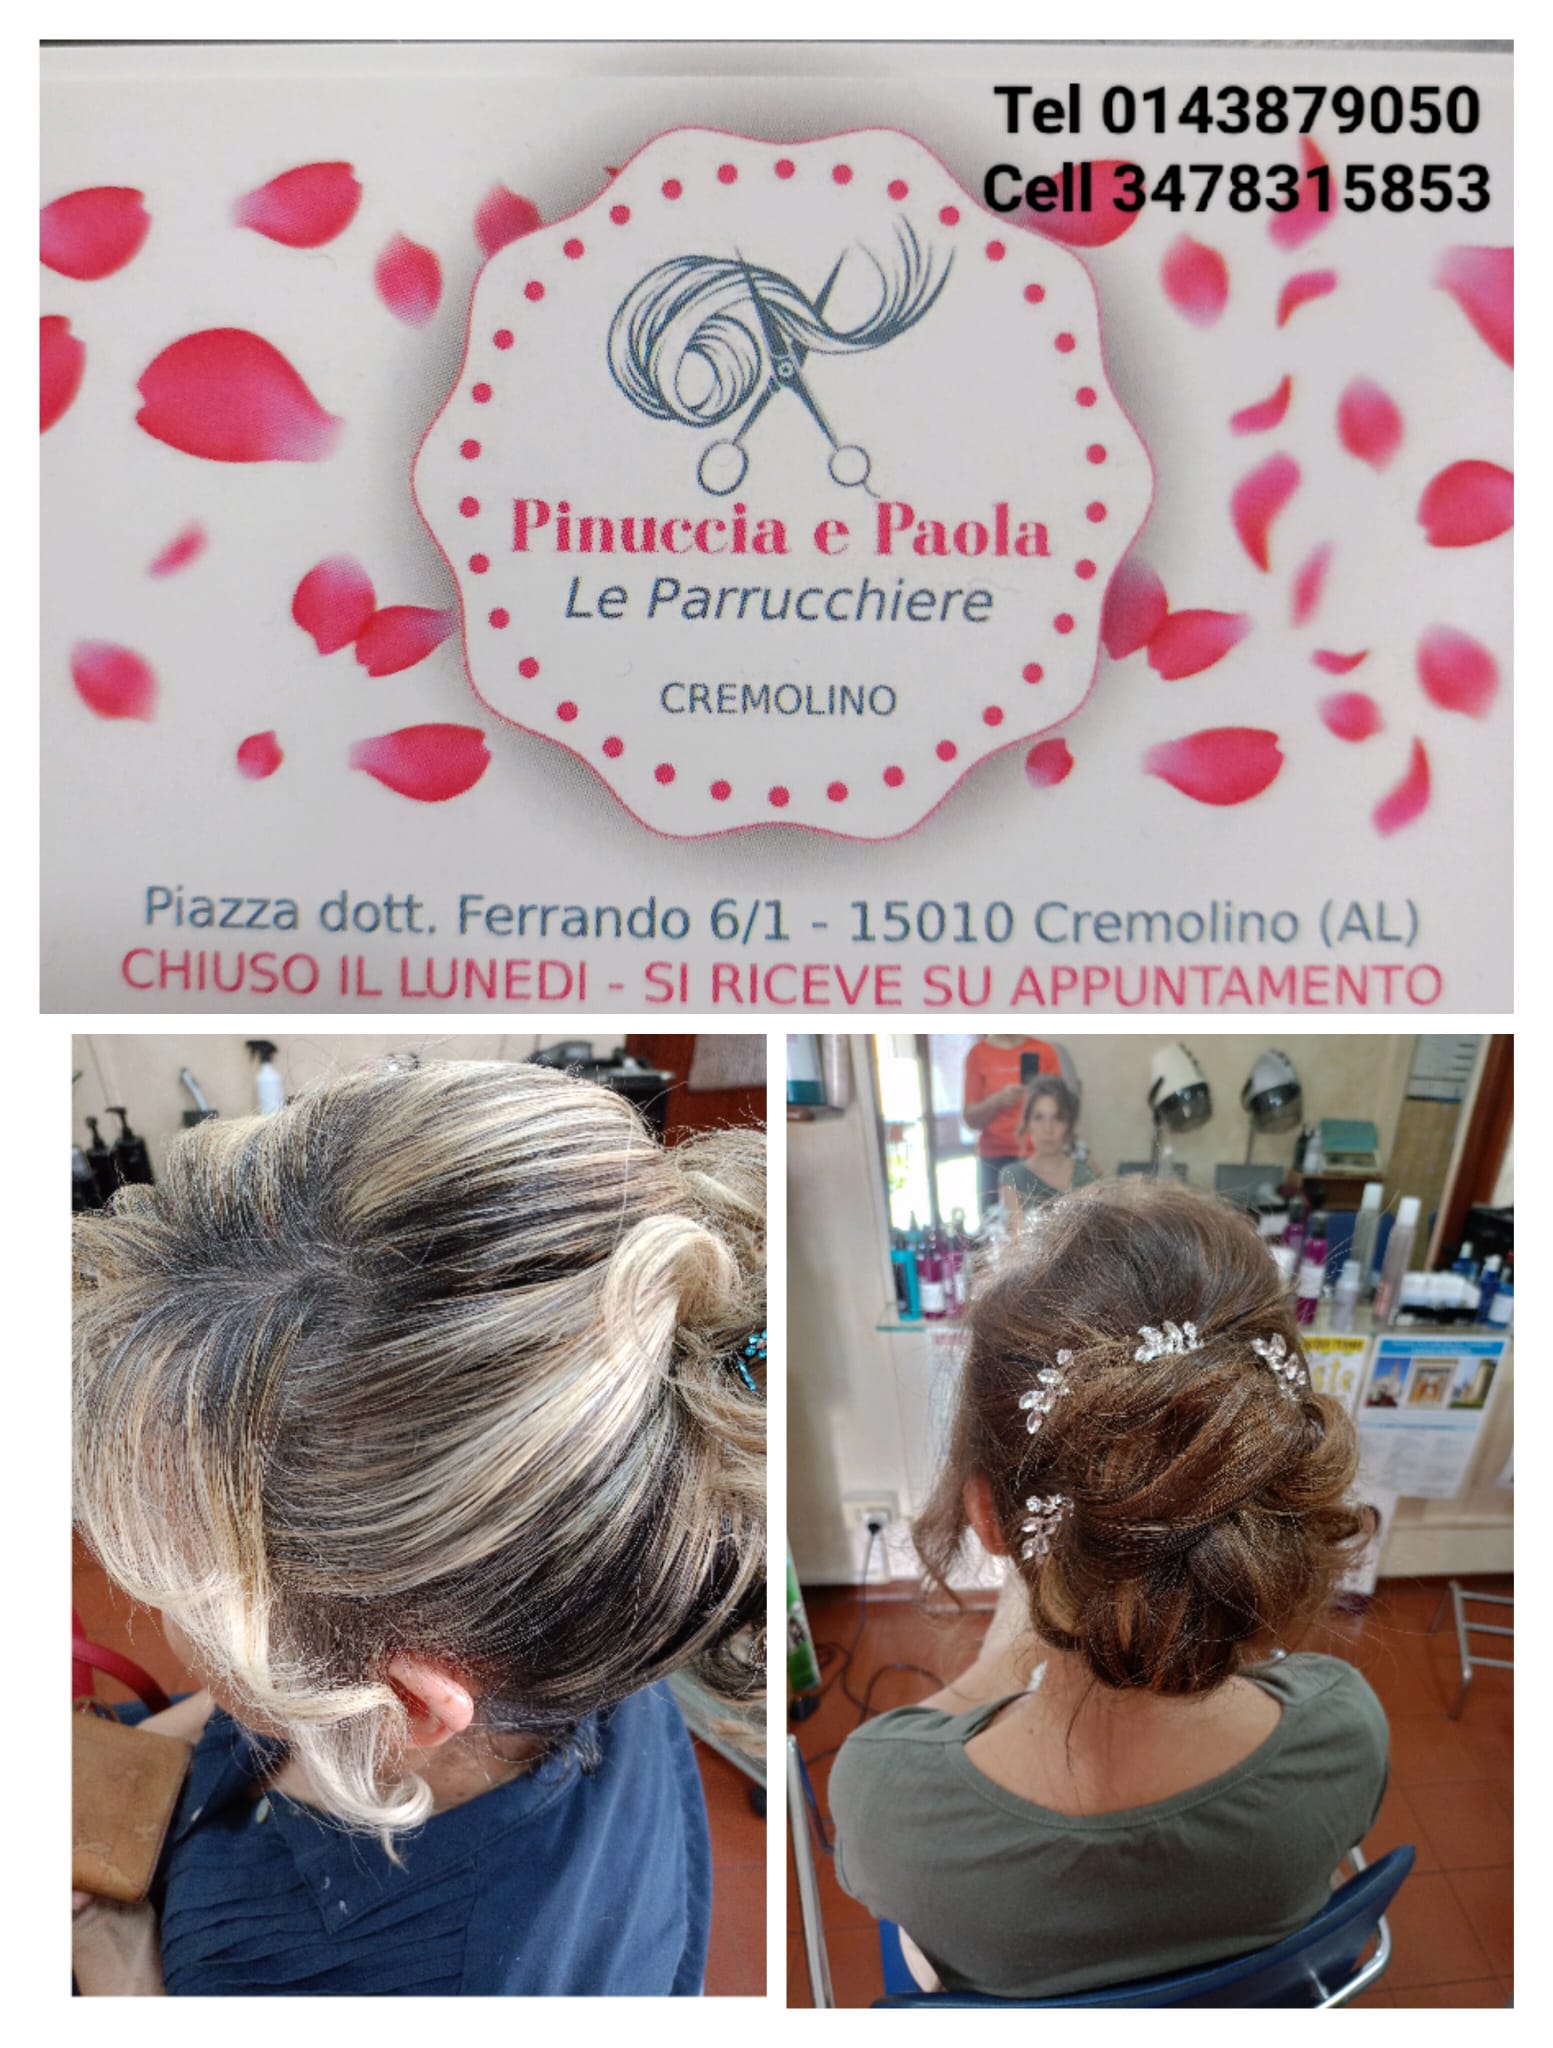 Da Pinuccia e Paola parrucchiere